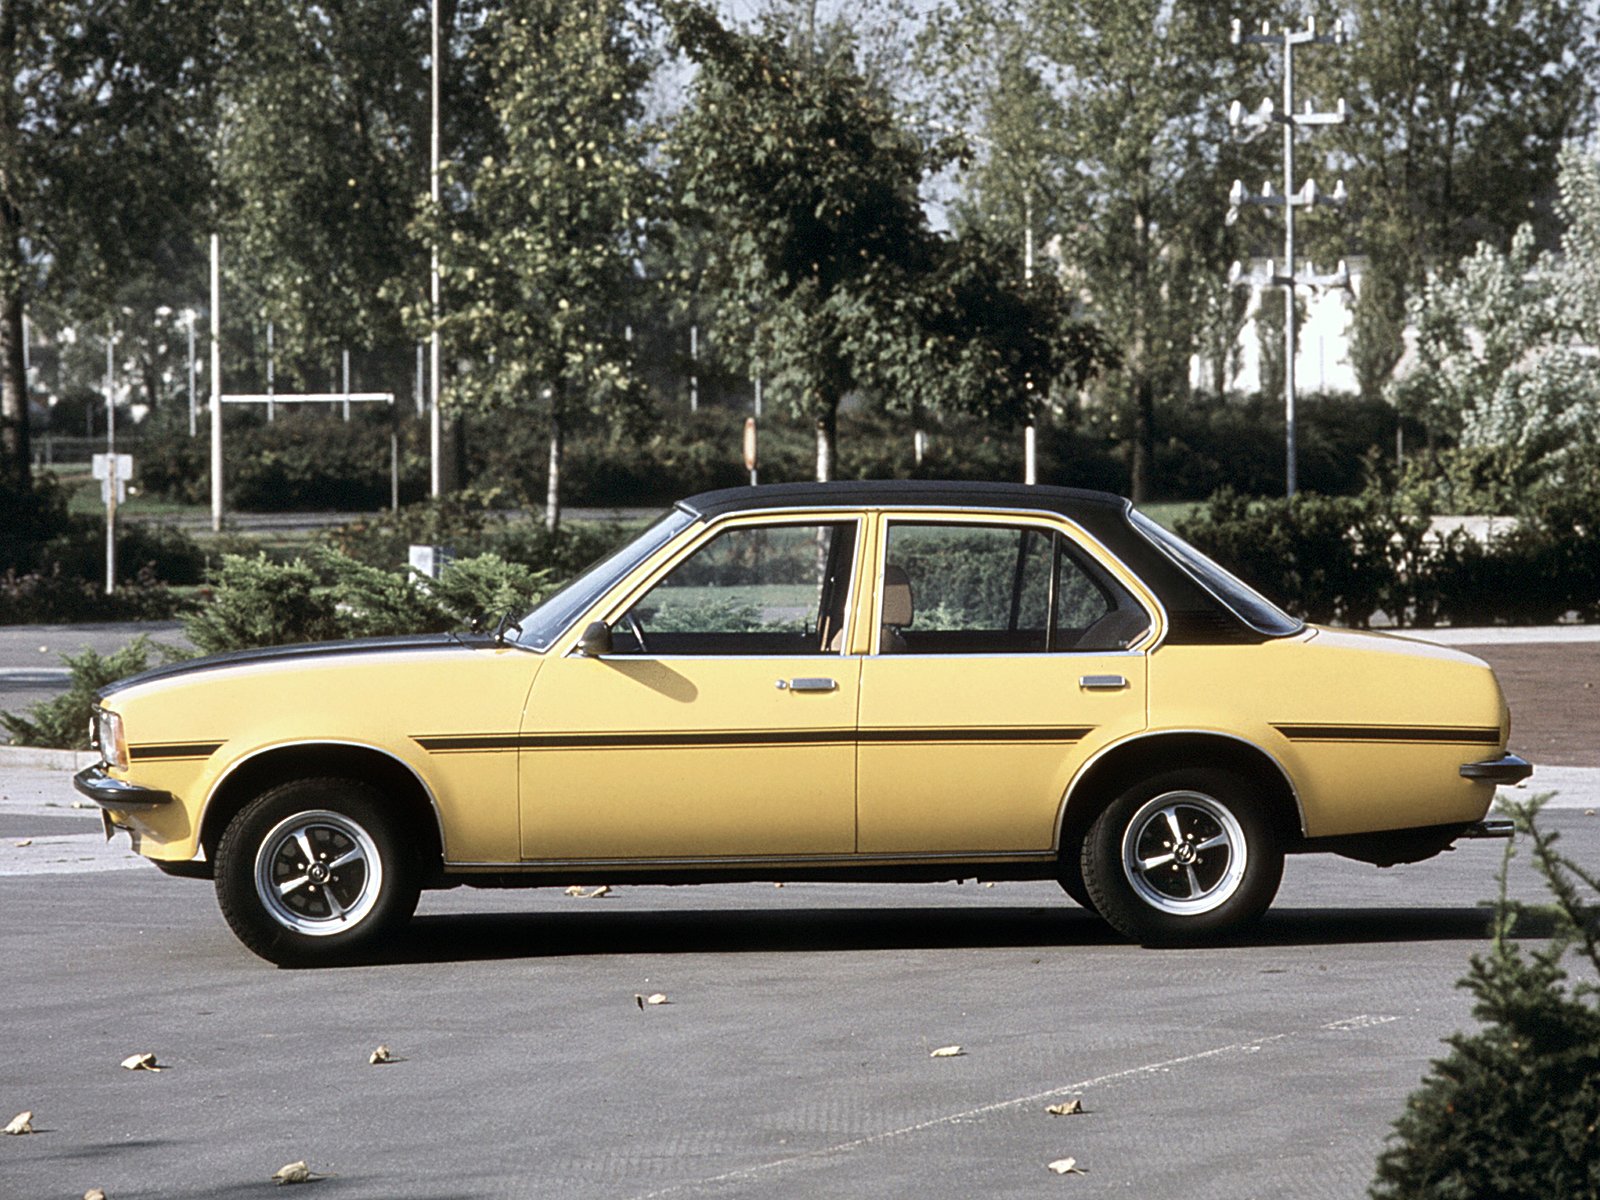 1975 81, Opel, Ascona, S r Wallpaper